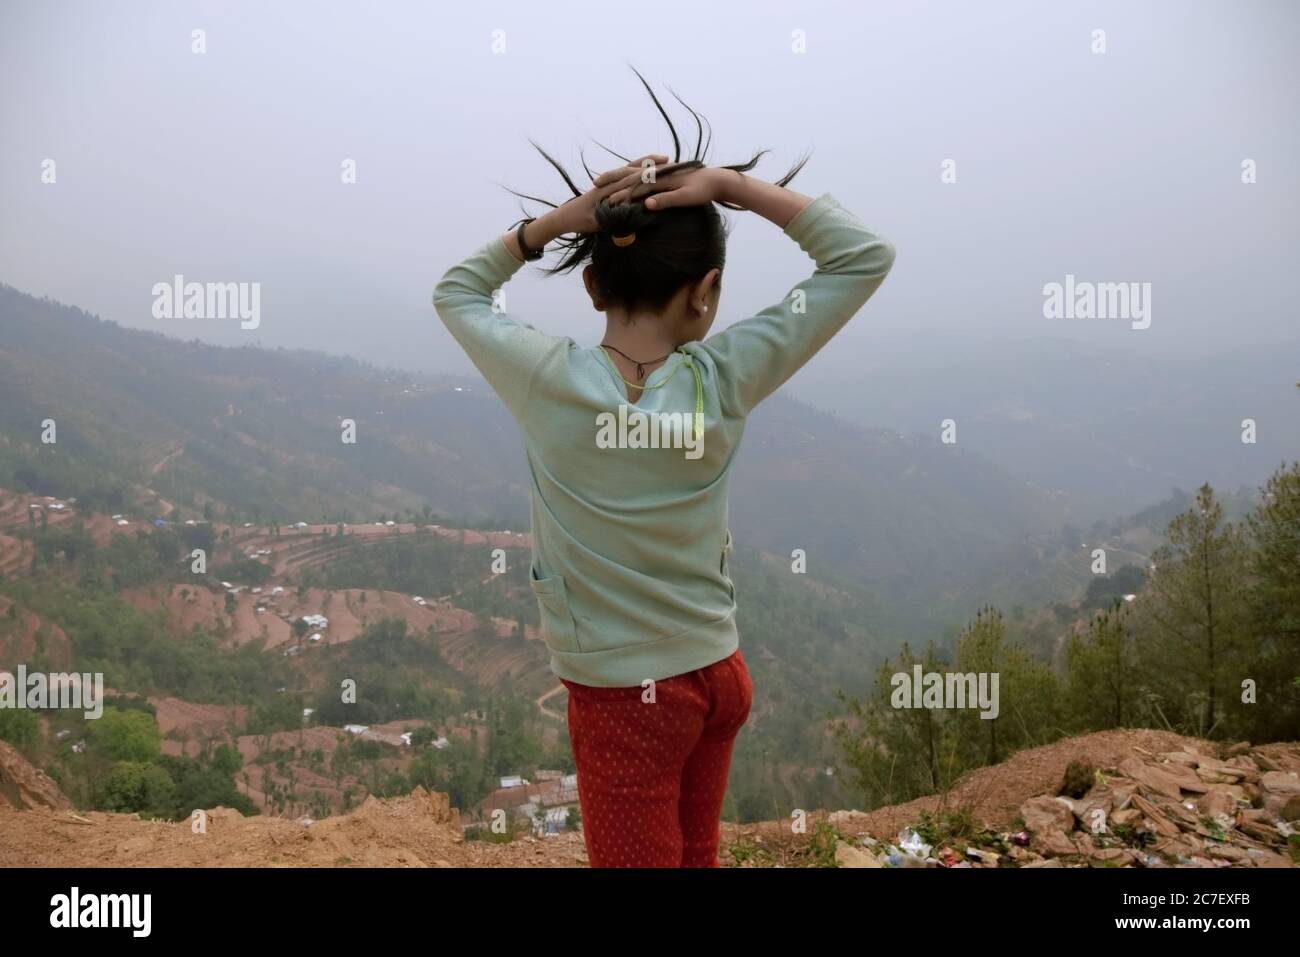 Portrait arrière d'un enfant qui surplombe une vallée fortement touchée par les tremblements de terre et les glissements de terrain de 2015 dans le village de Chandani Mandan, Kavrepalanchok, au Népal. Banque D'Images